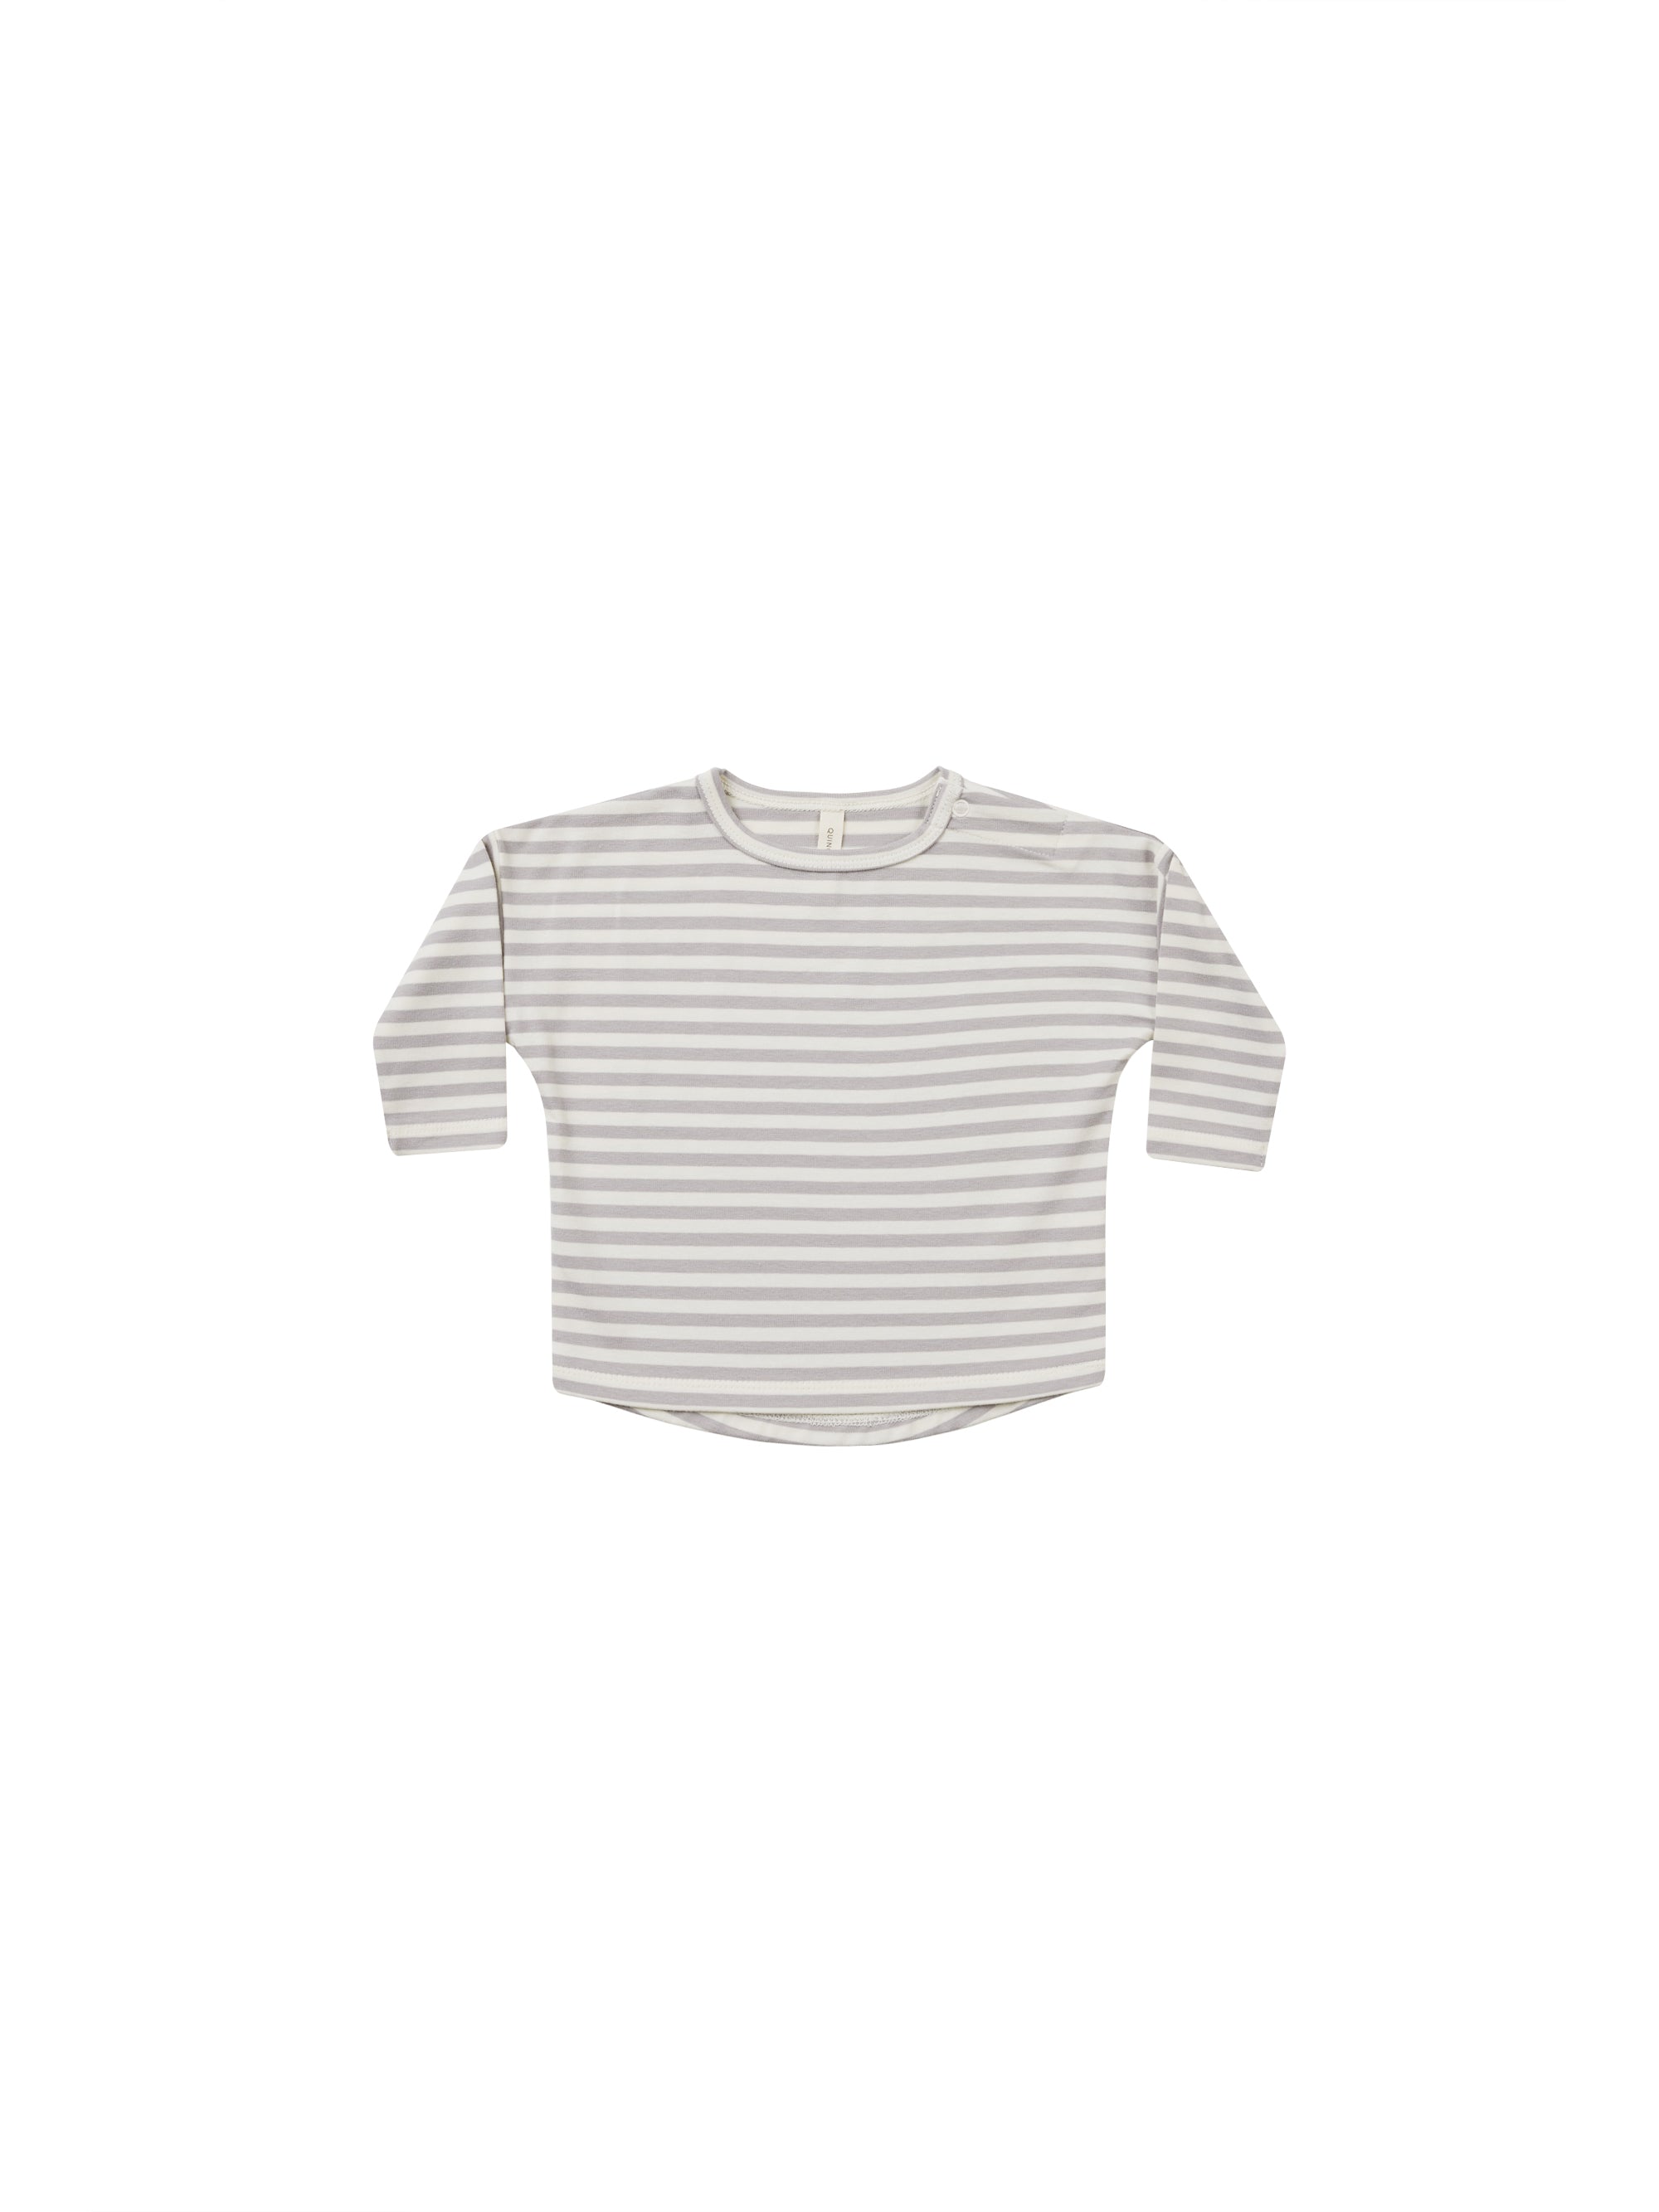 Quincy Mae Long Sleeve Tee - Periwinkle Stripe